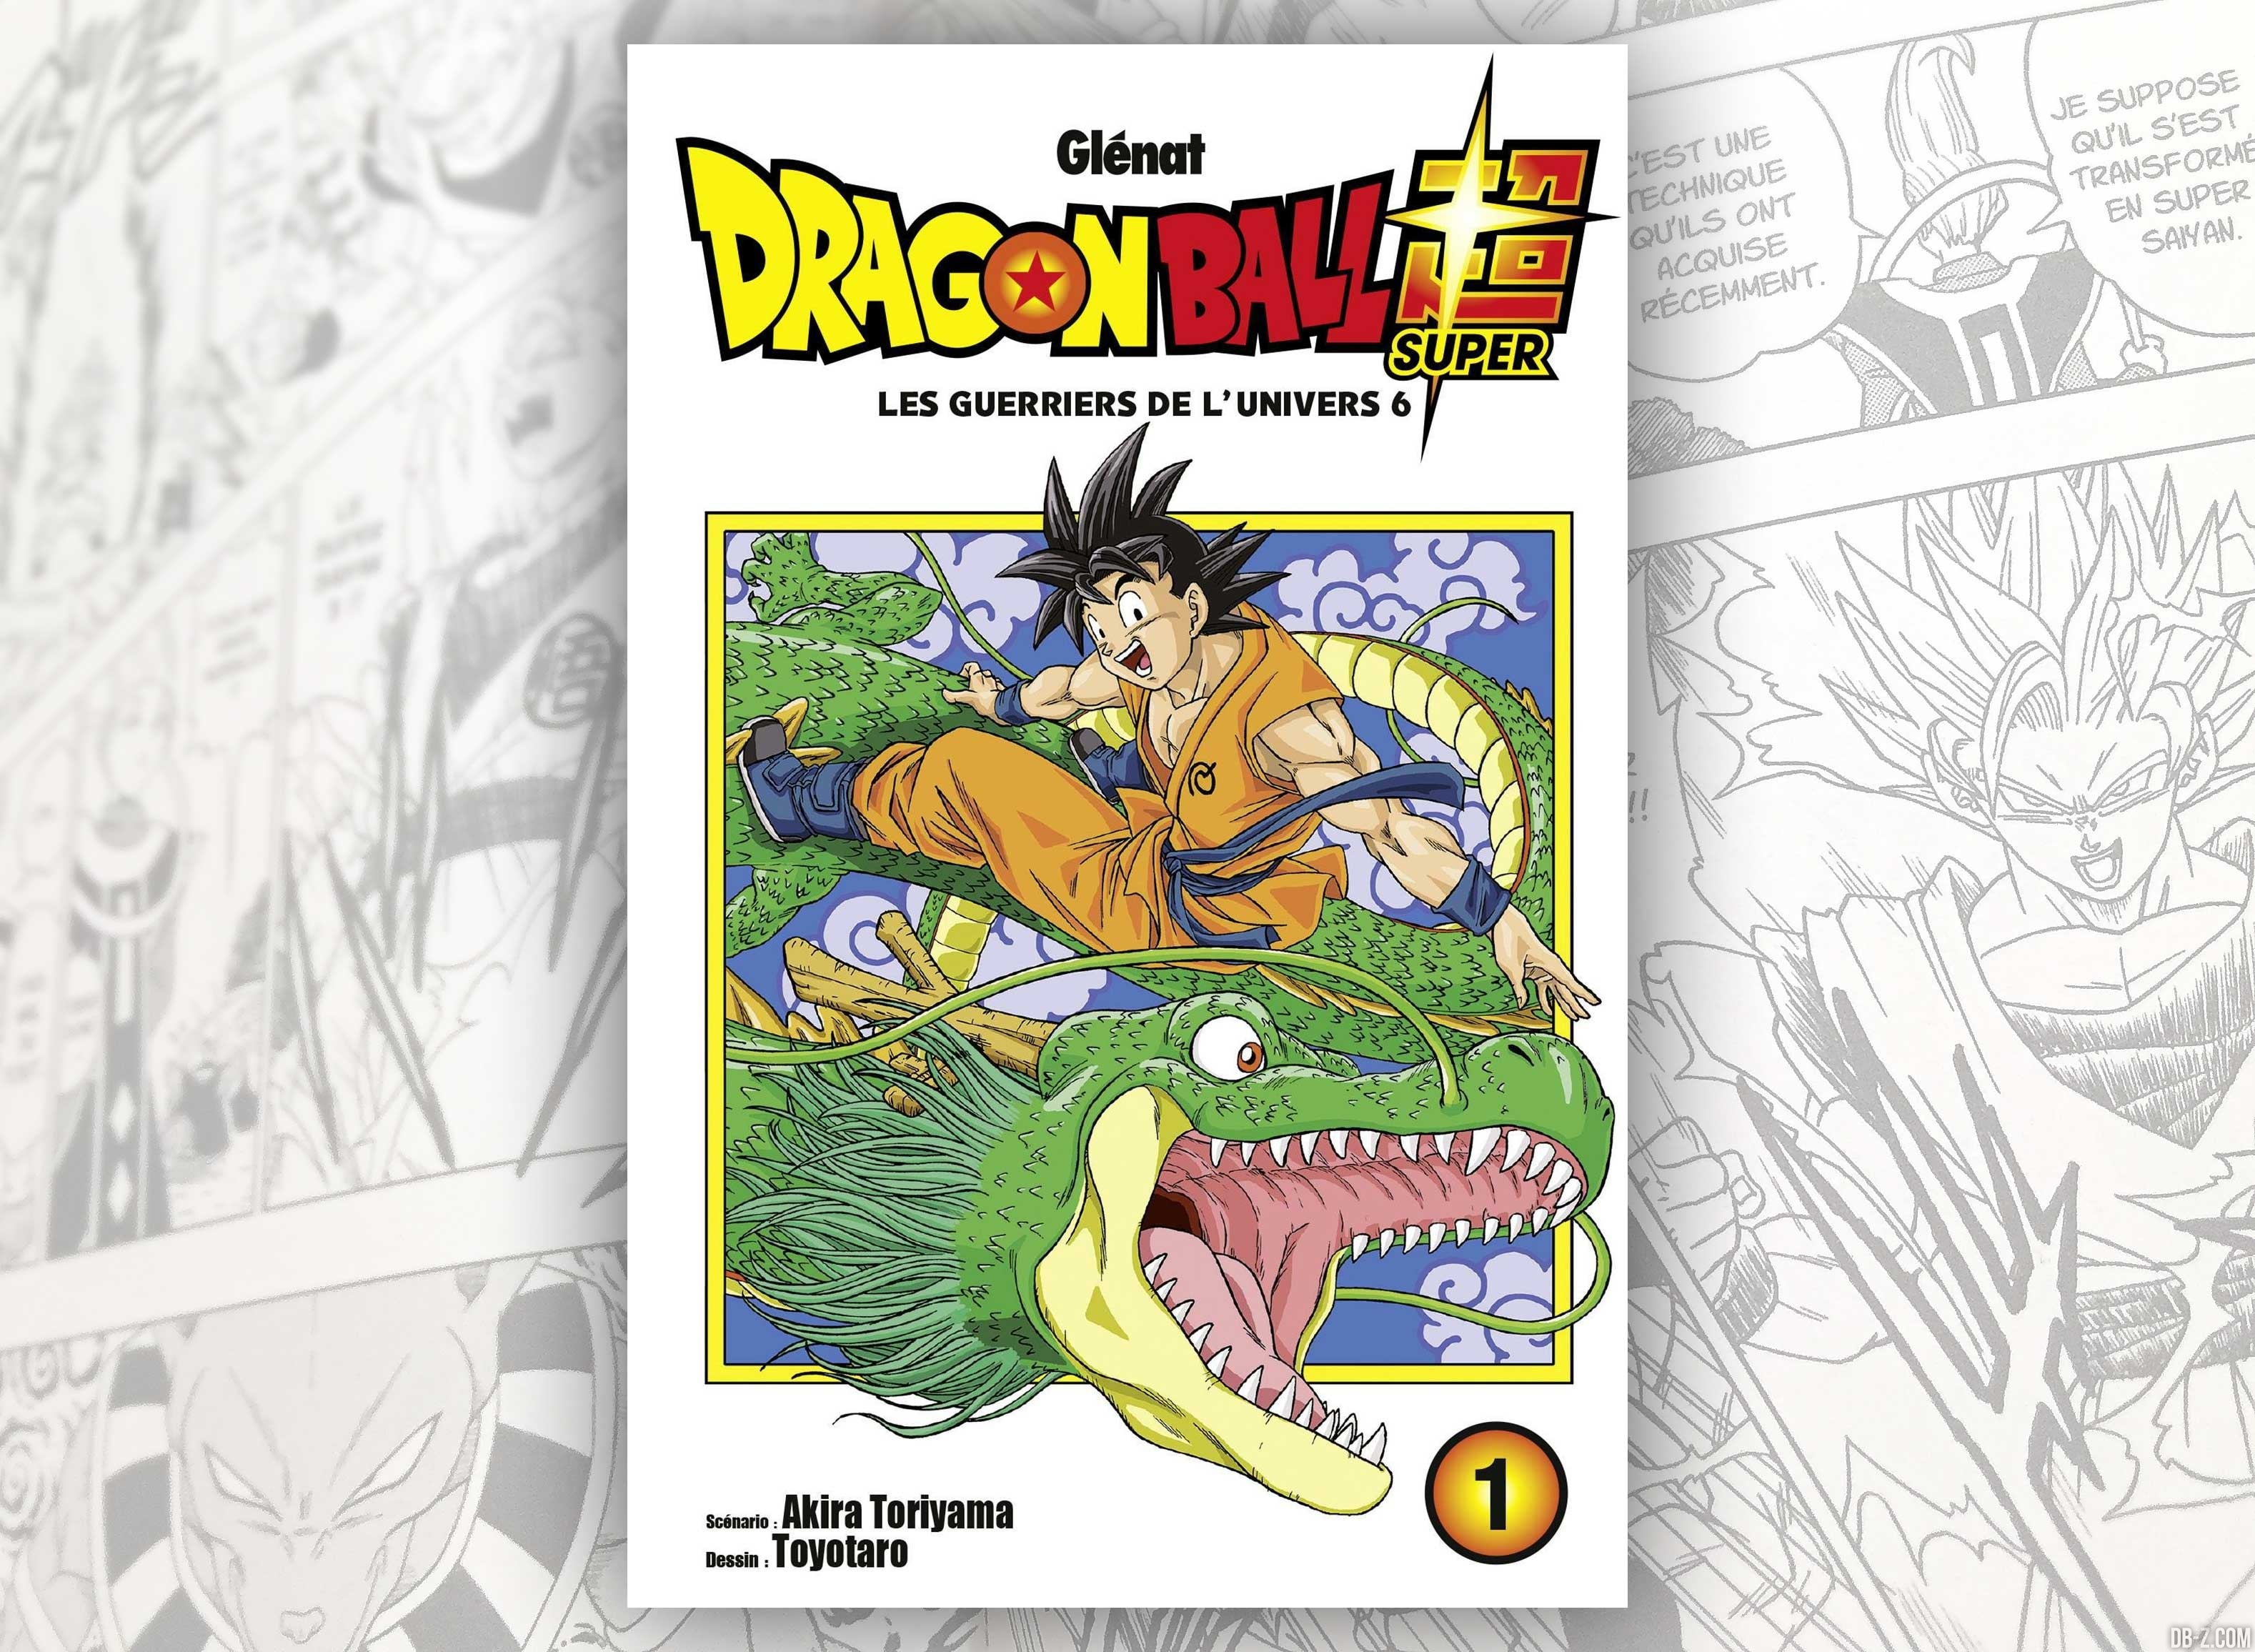 Le Tome 1 de Dragon Ball Super est N°1 des ventes en France